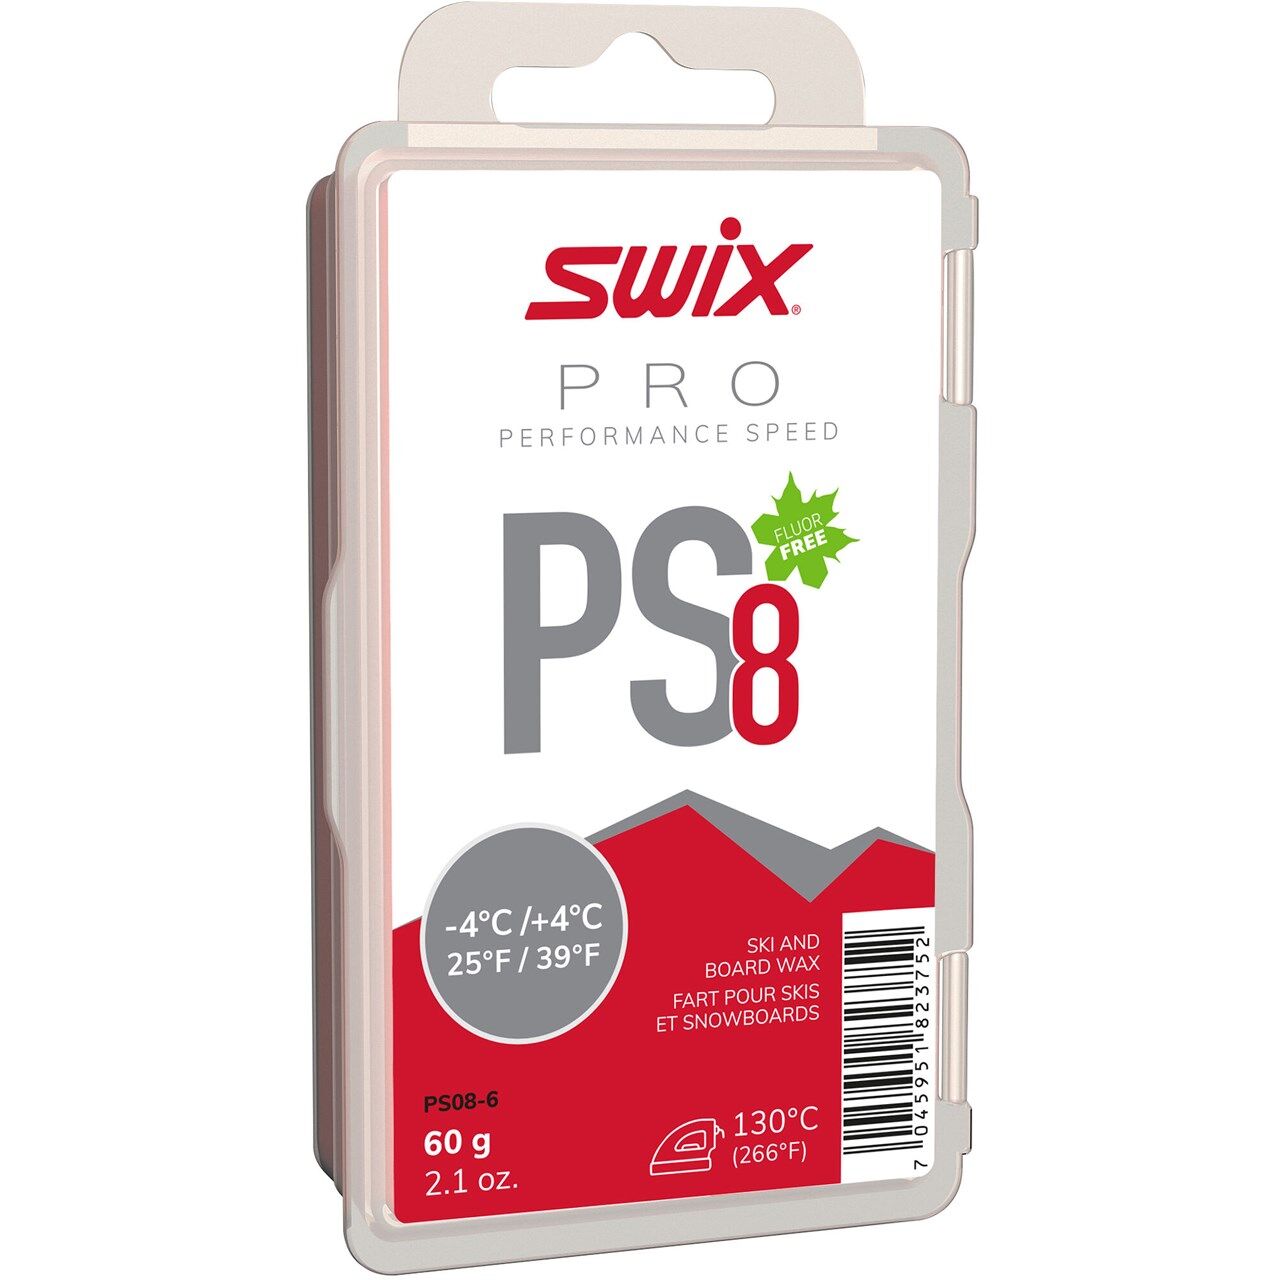 Swix PS8 Red, -4°C/+4°C, 60g PS08-6 2020